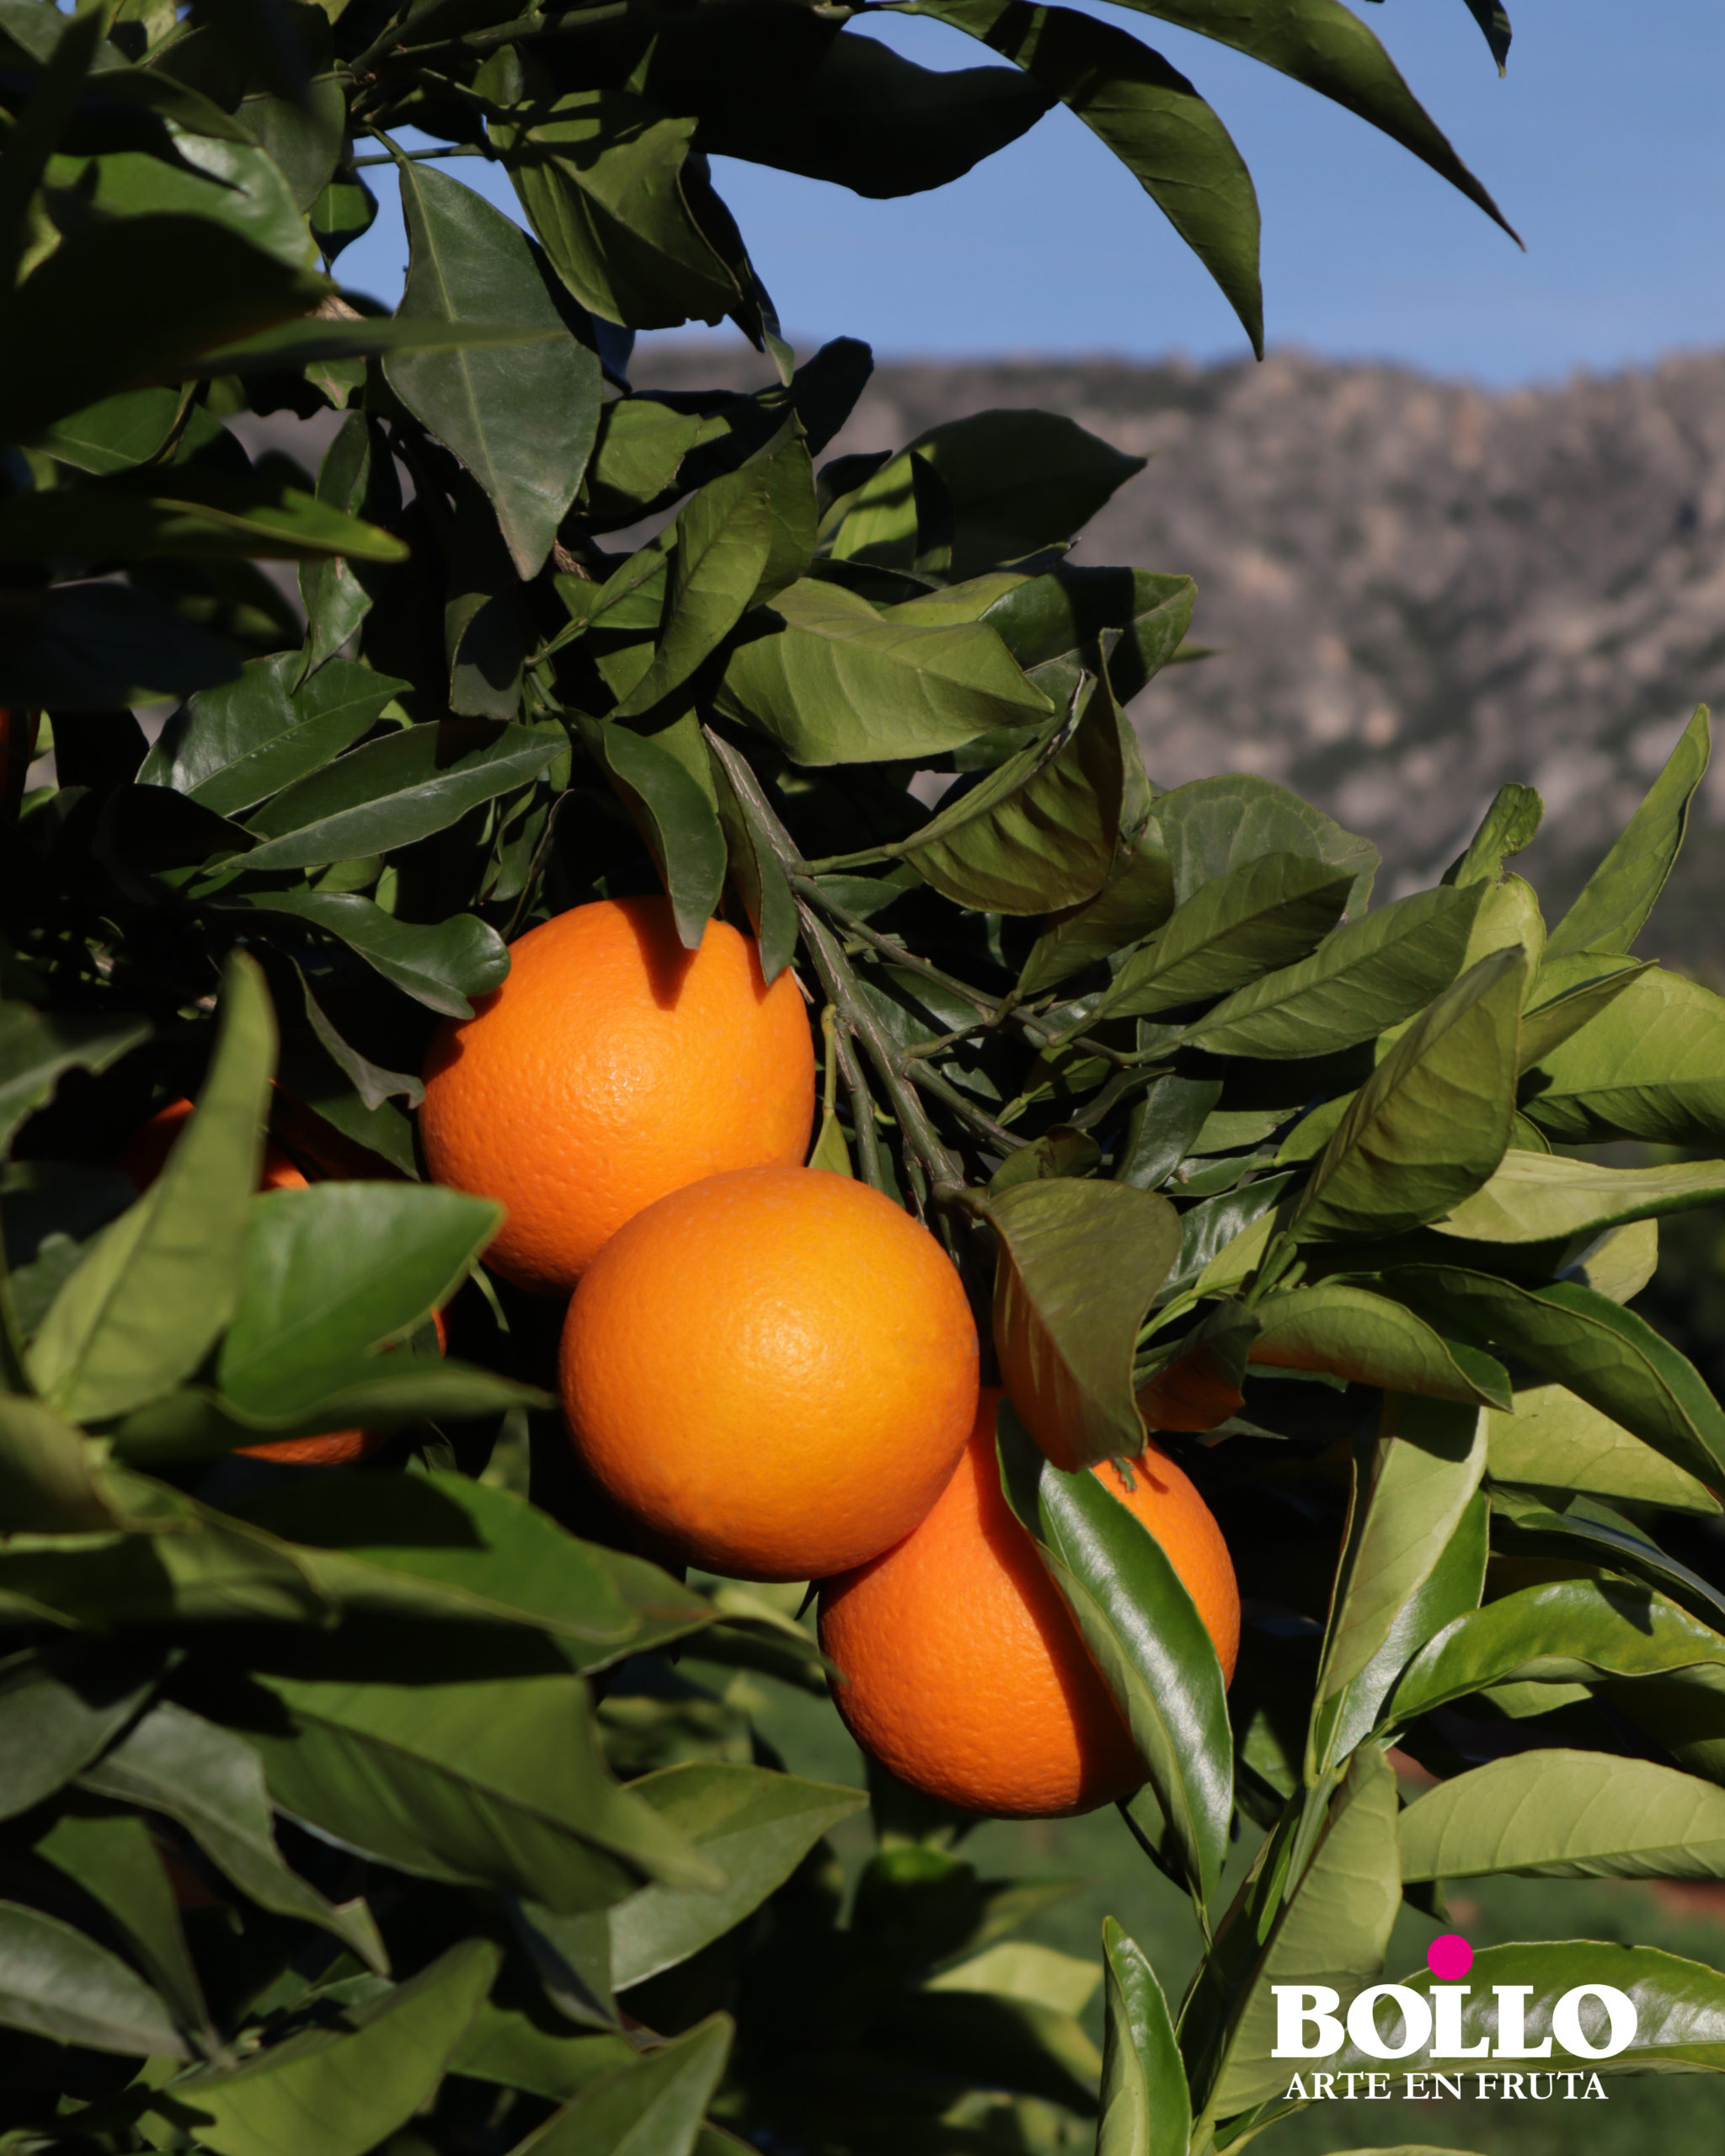 Empezamos el sábado rodeados de deliciosas naranjas Bollo Fruits